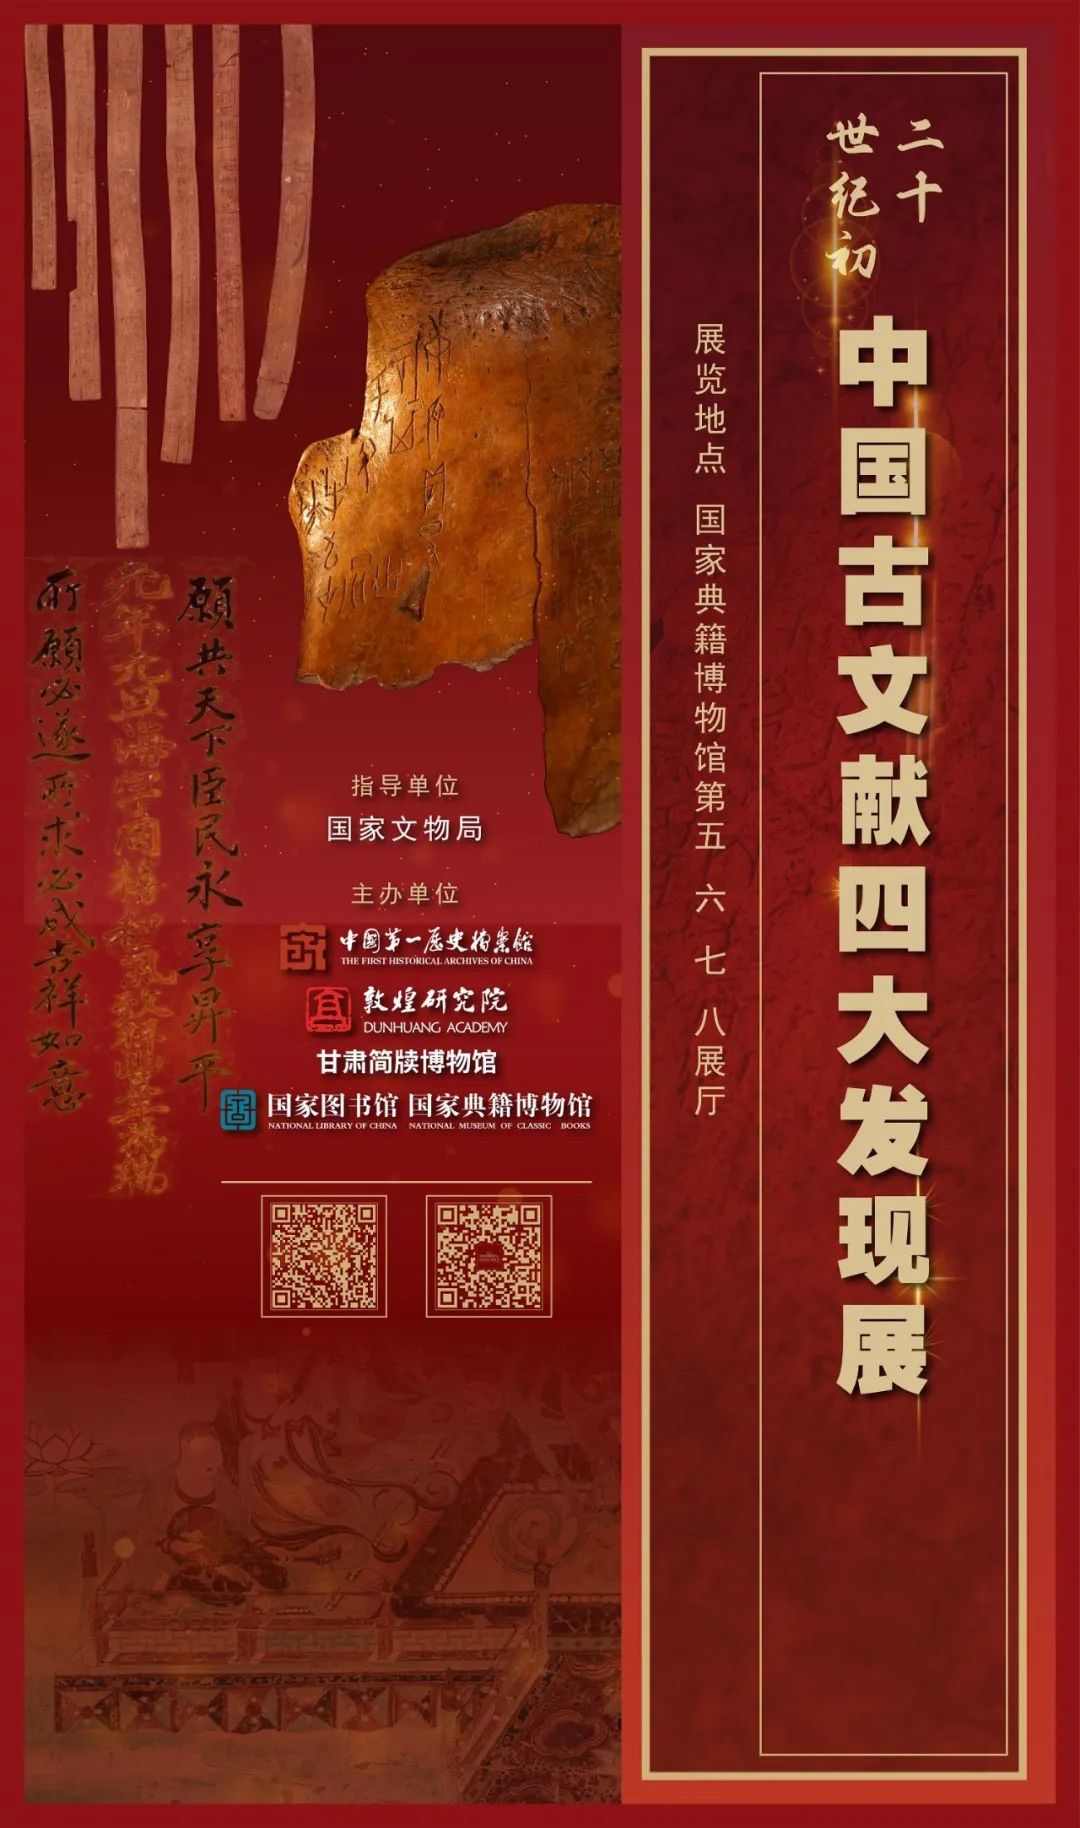 “二十世紀初中國古文獻四大發現展”